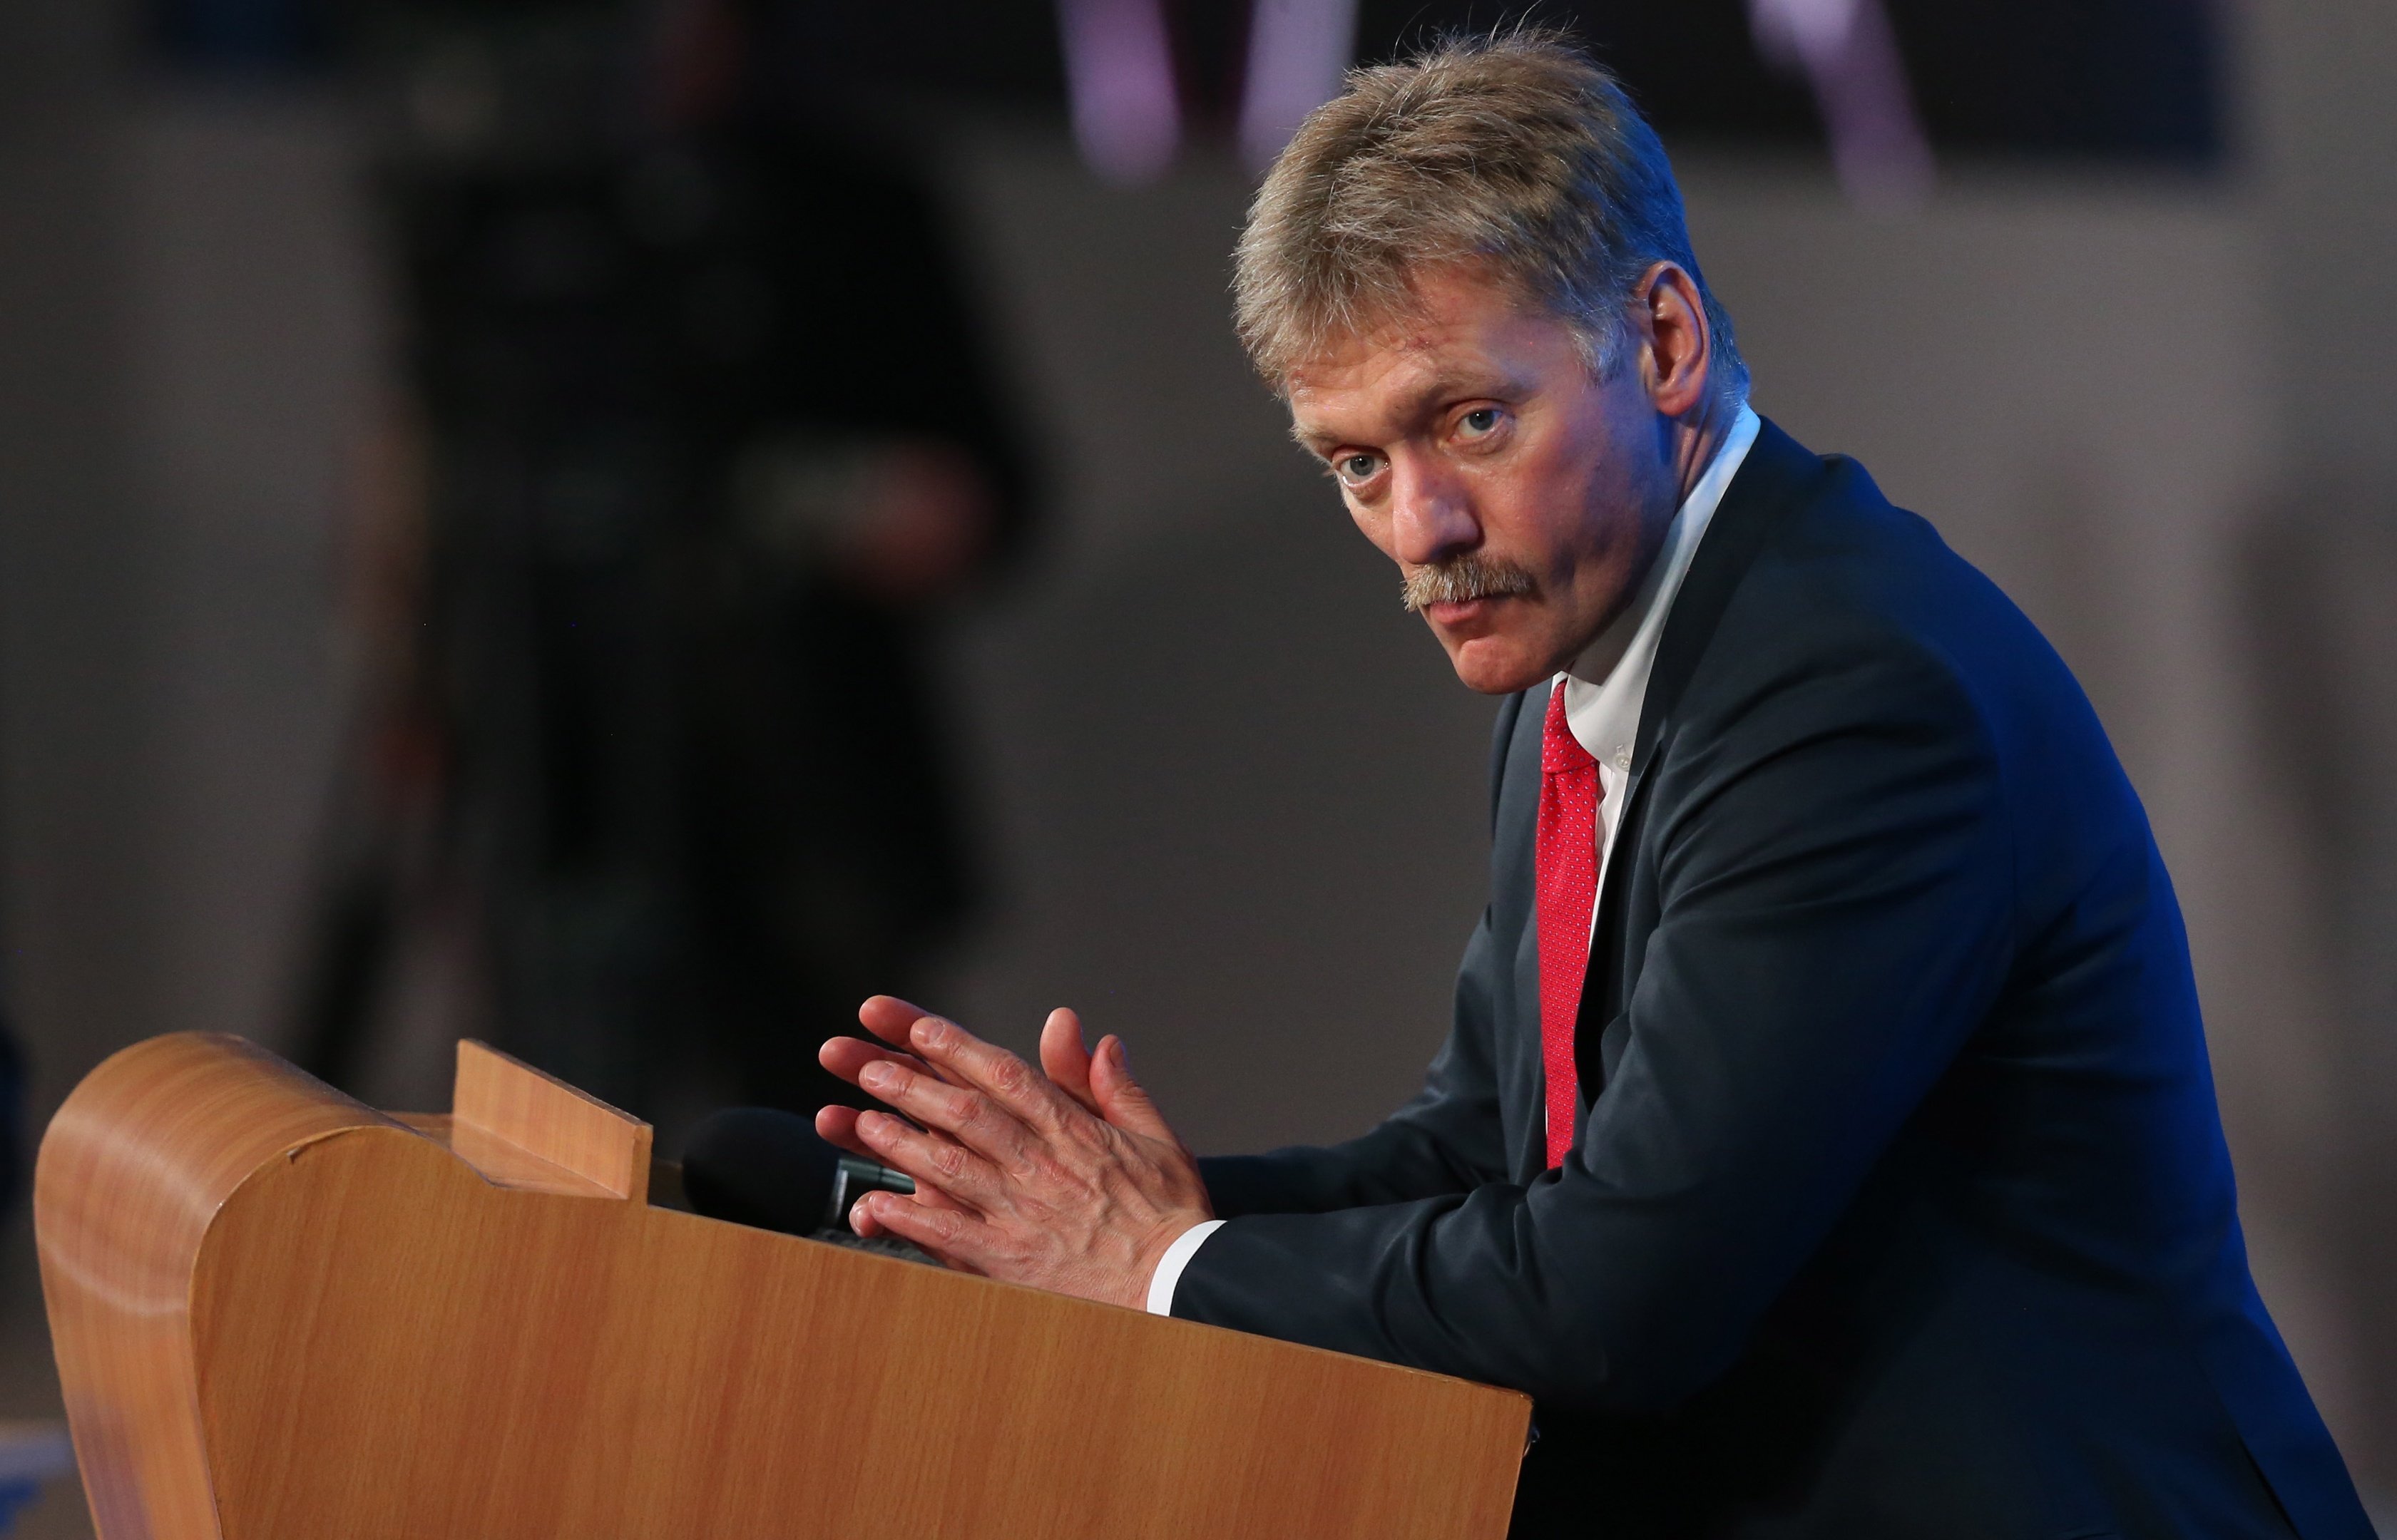 Песков: Кремль следит за ситуацией в Луганске